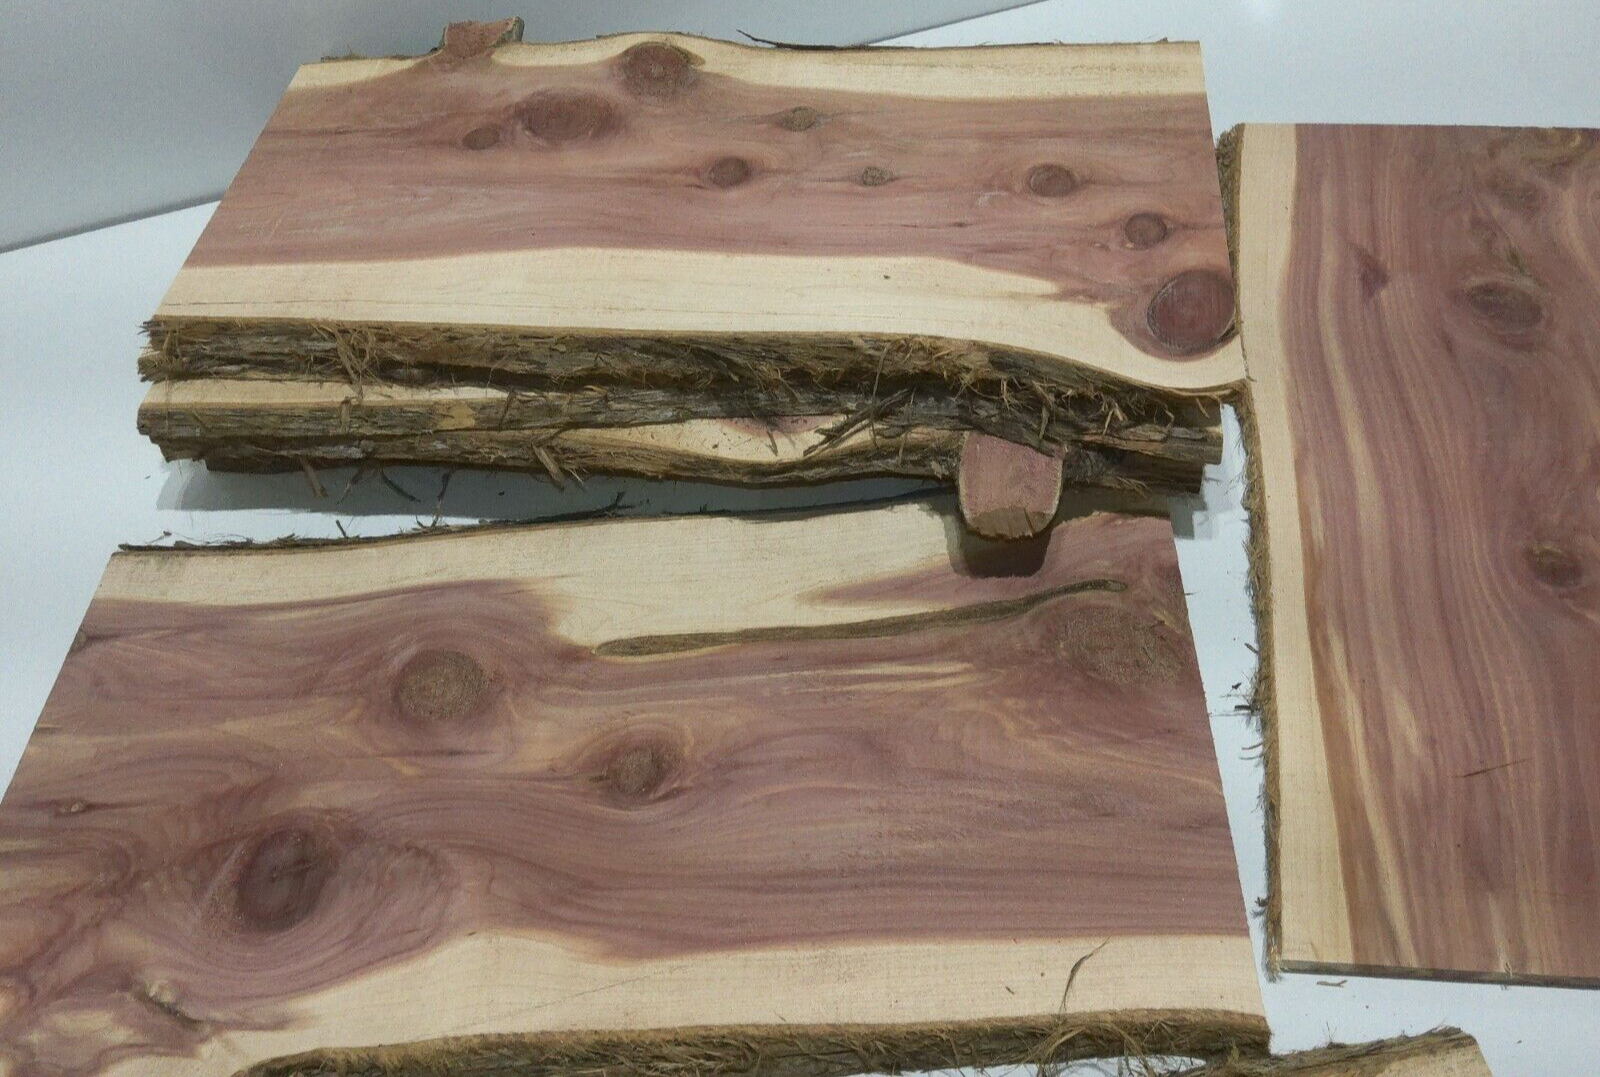 1 Milled Kiln Dried Eastern Red Cedar Lumber SLAB 24" X 8-12" X 1/2" RARE Our Wood Shop - фотография #6